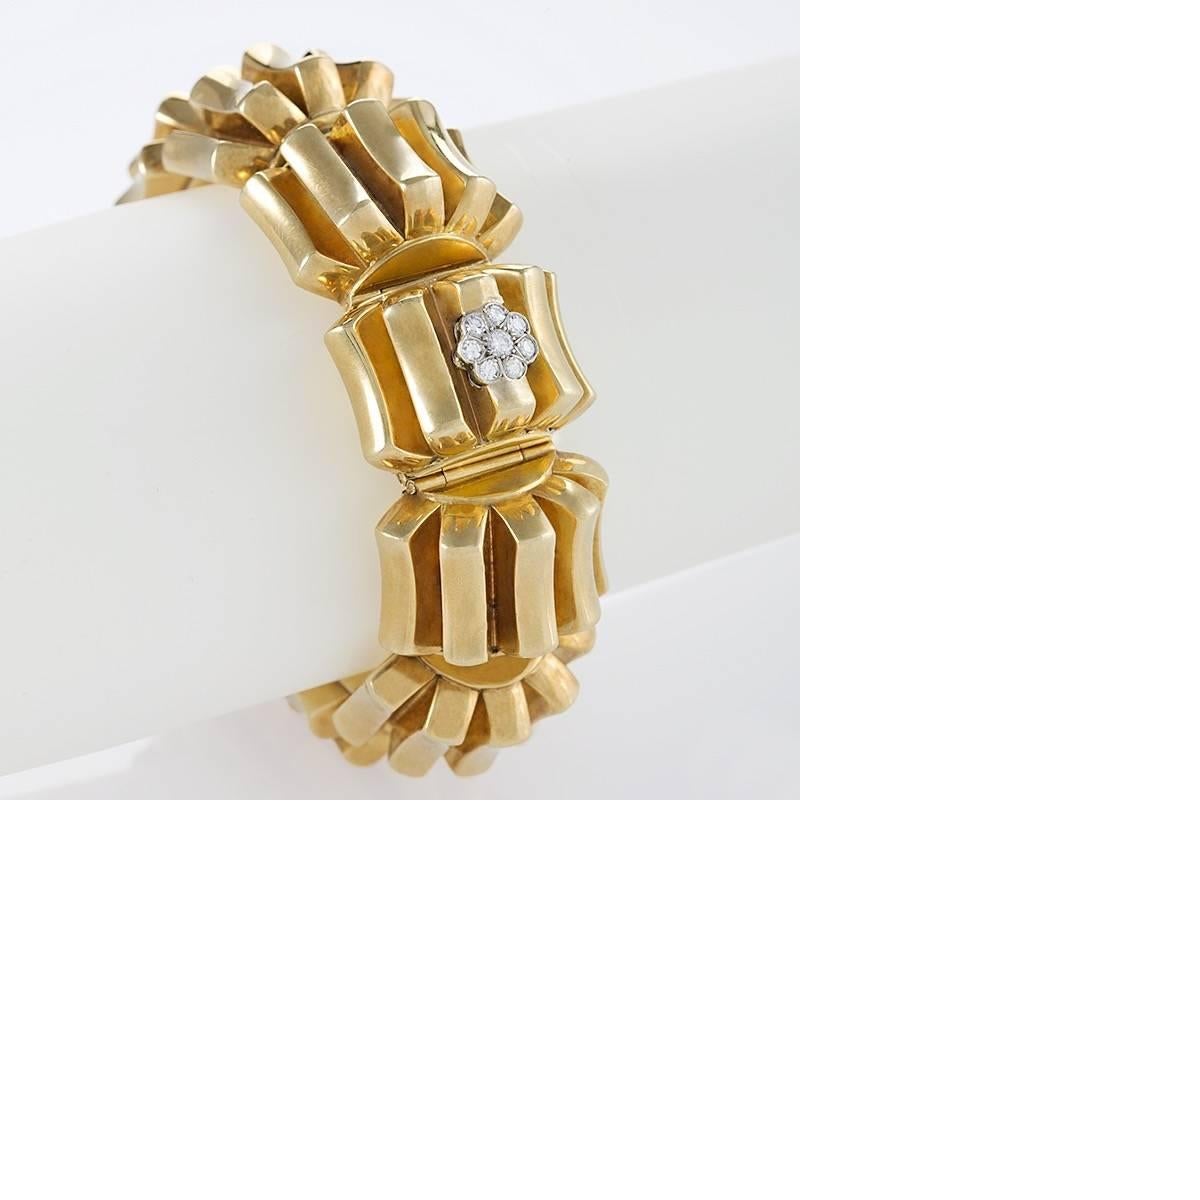 Diese prächtige Omega-Armbanduhr aus Gold und Diamanten aus der Mitte des 20. Jahrhunderts macht das Beobachten der Zeit zu einem Vergnügen. Die zehn biegsamen Bombé-Abschnitte fächern die polierten Goldrippen auf, während die Glieder jeden